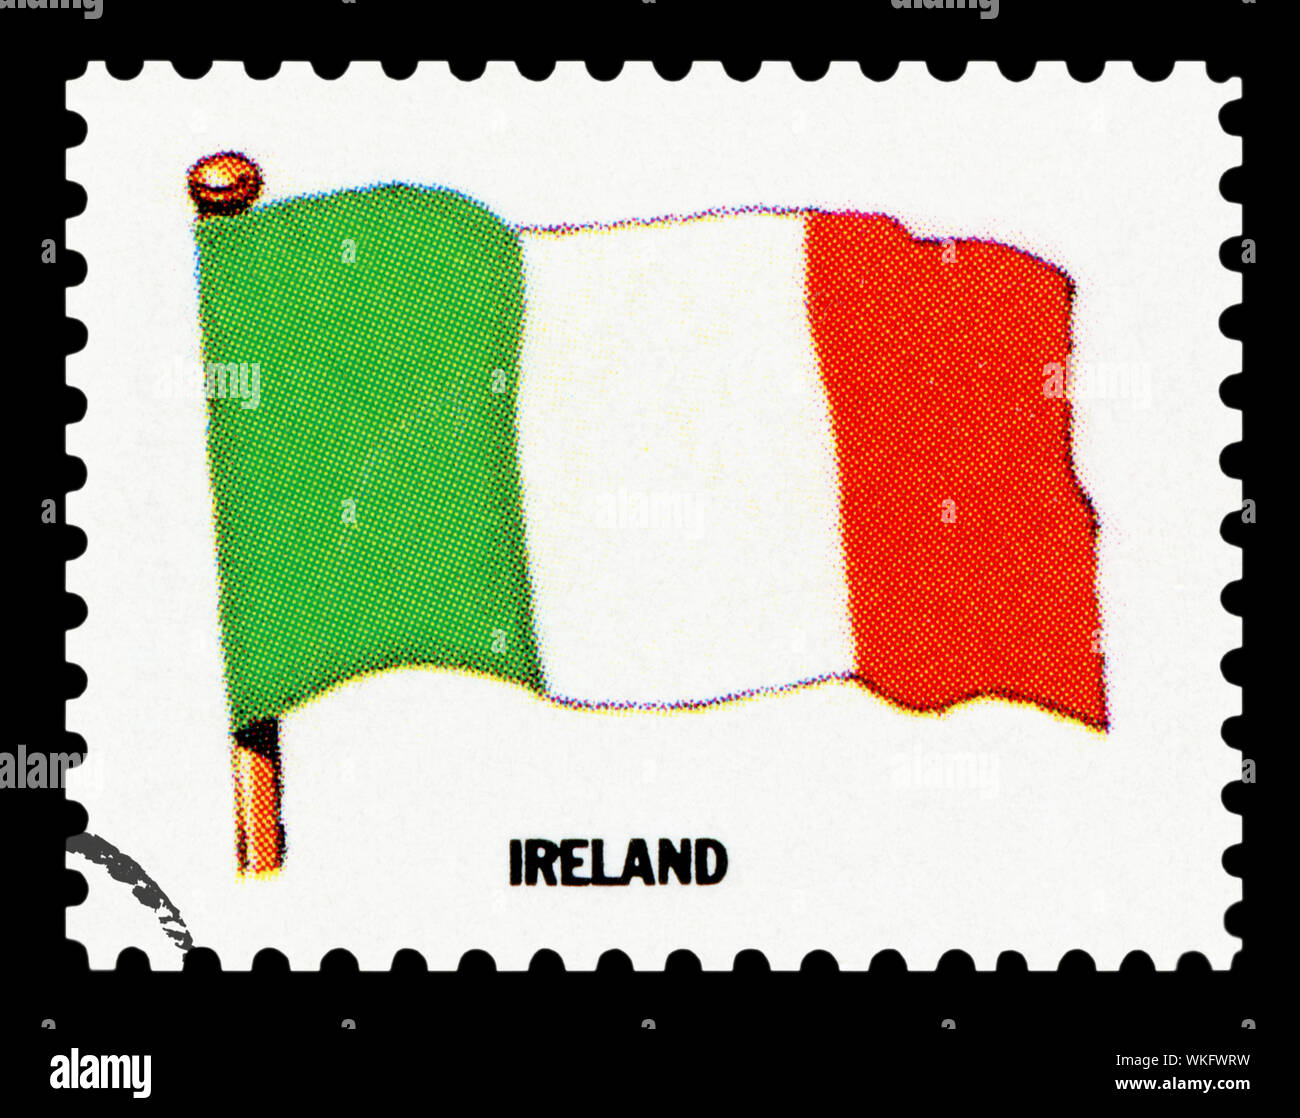 IRELAND FLAG - Postage Stamp isolated on black background. Stock Photo